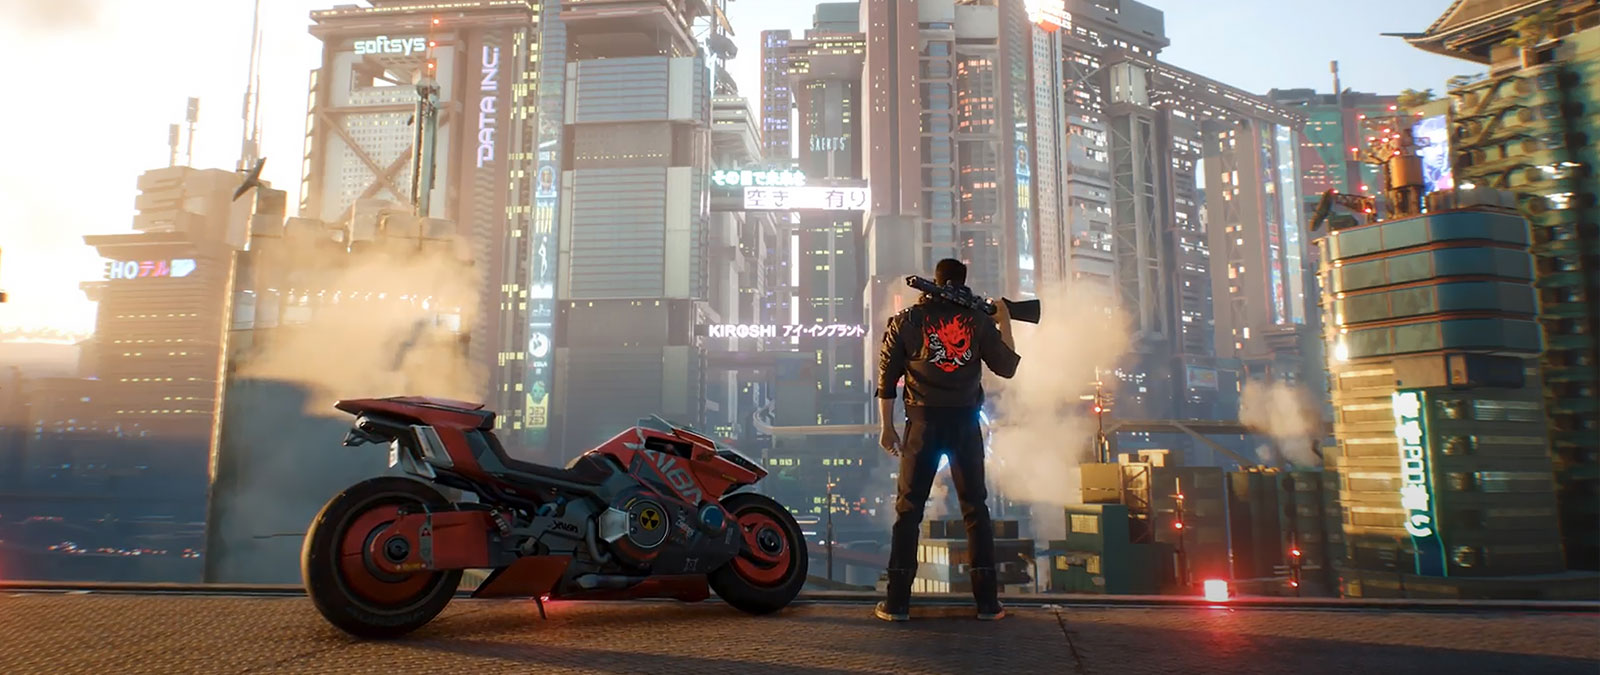 V betraktar Night City med ett gevär över skuldran, ståendes intill en motorcykel